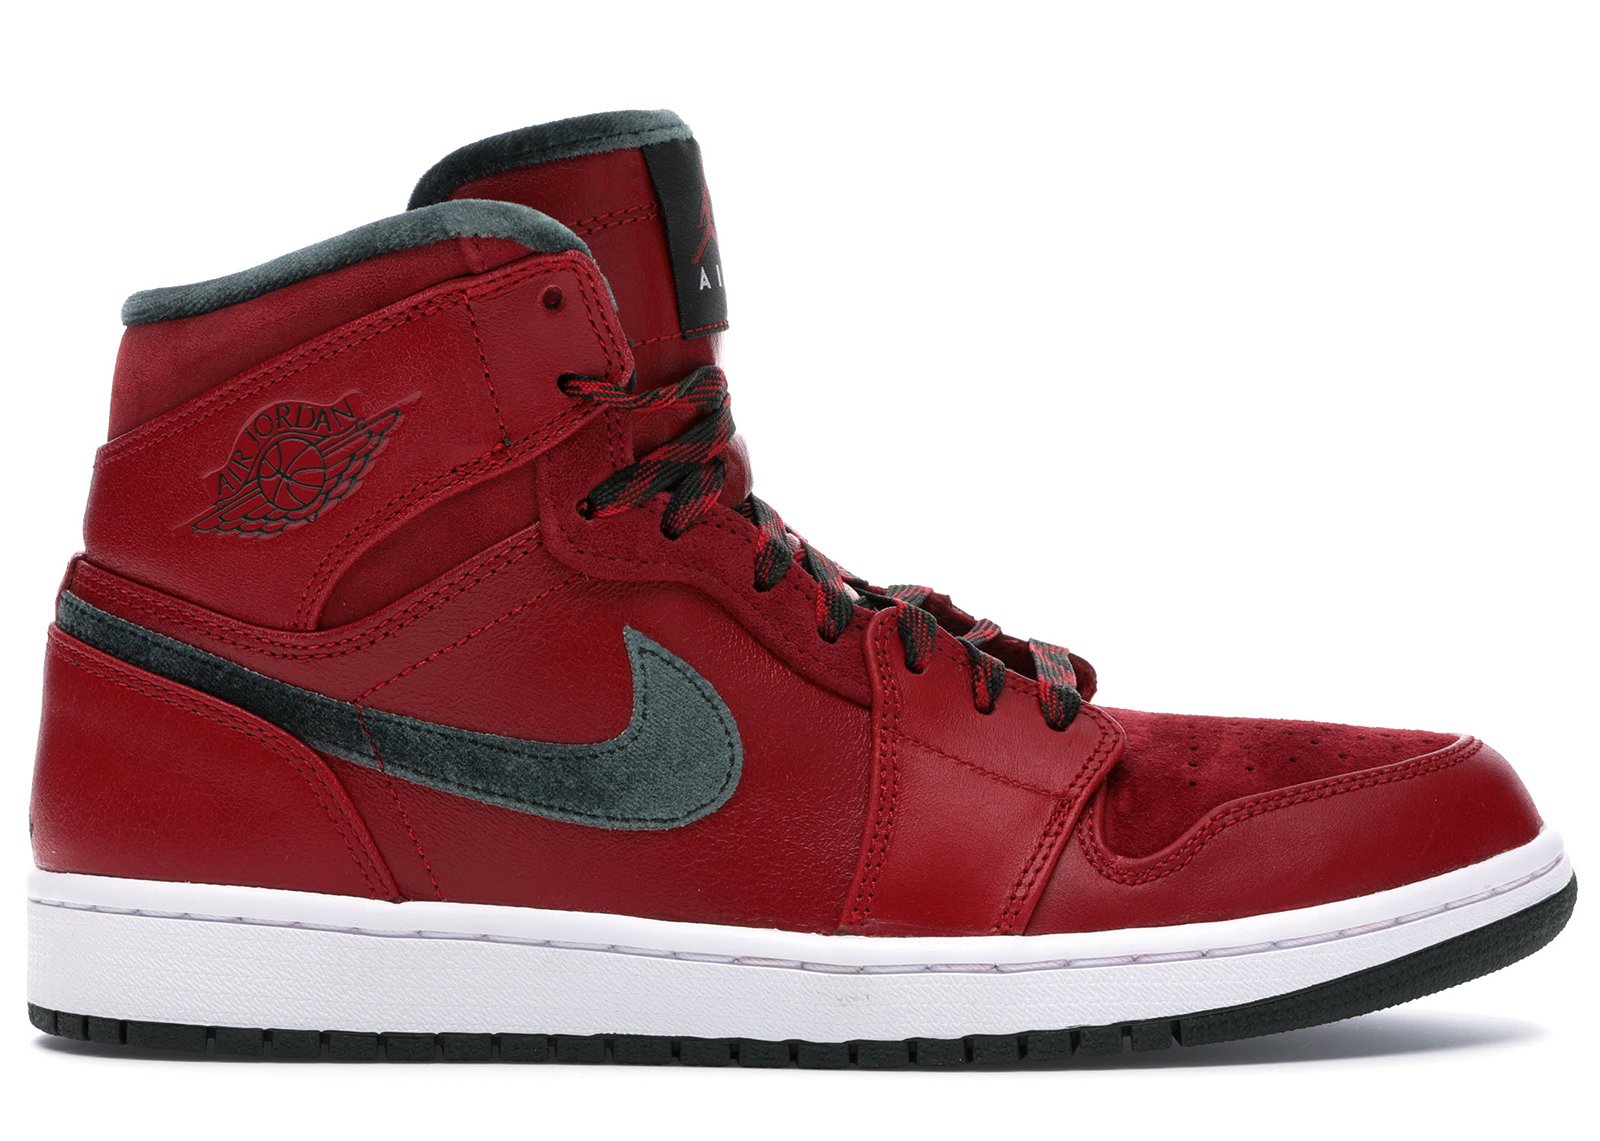 Jordan 1 Retro Premier Red Gucci (2013) sneakers